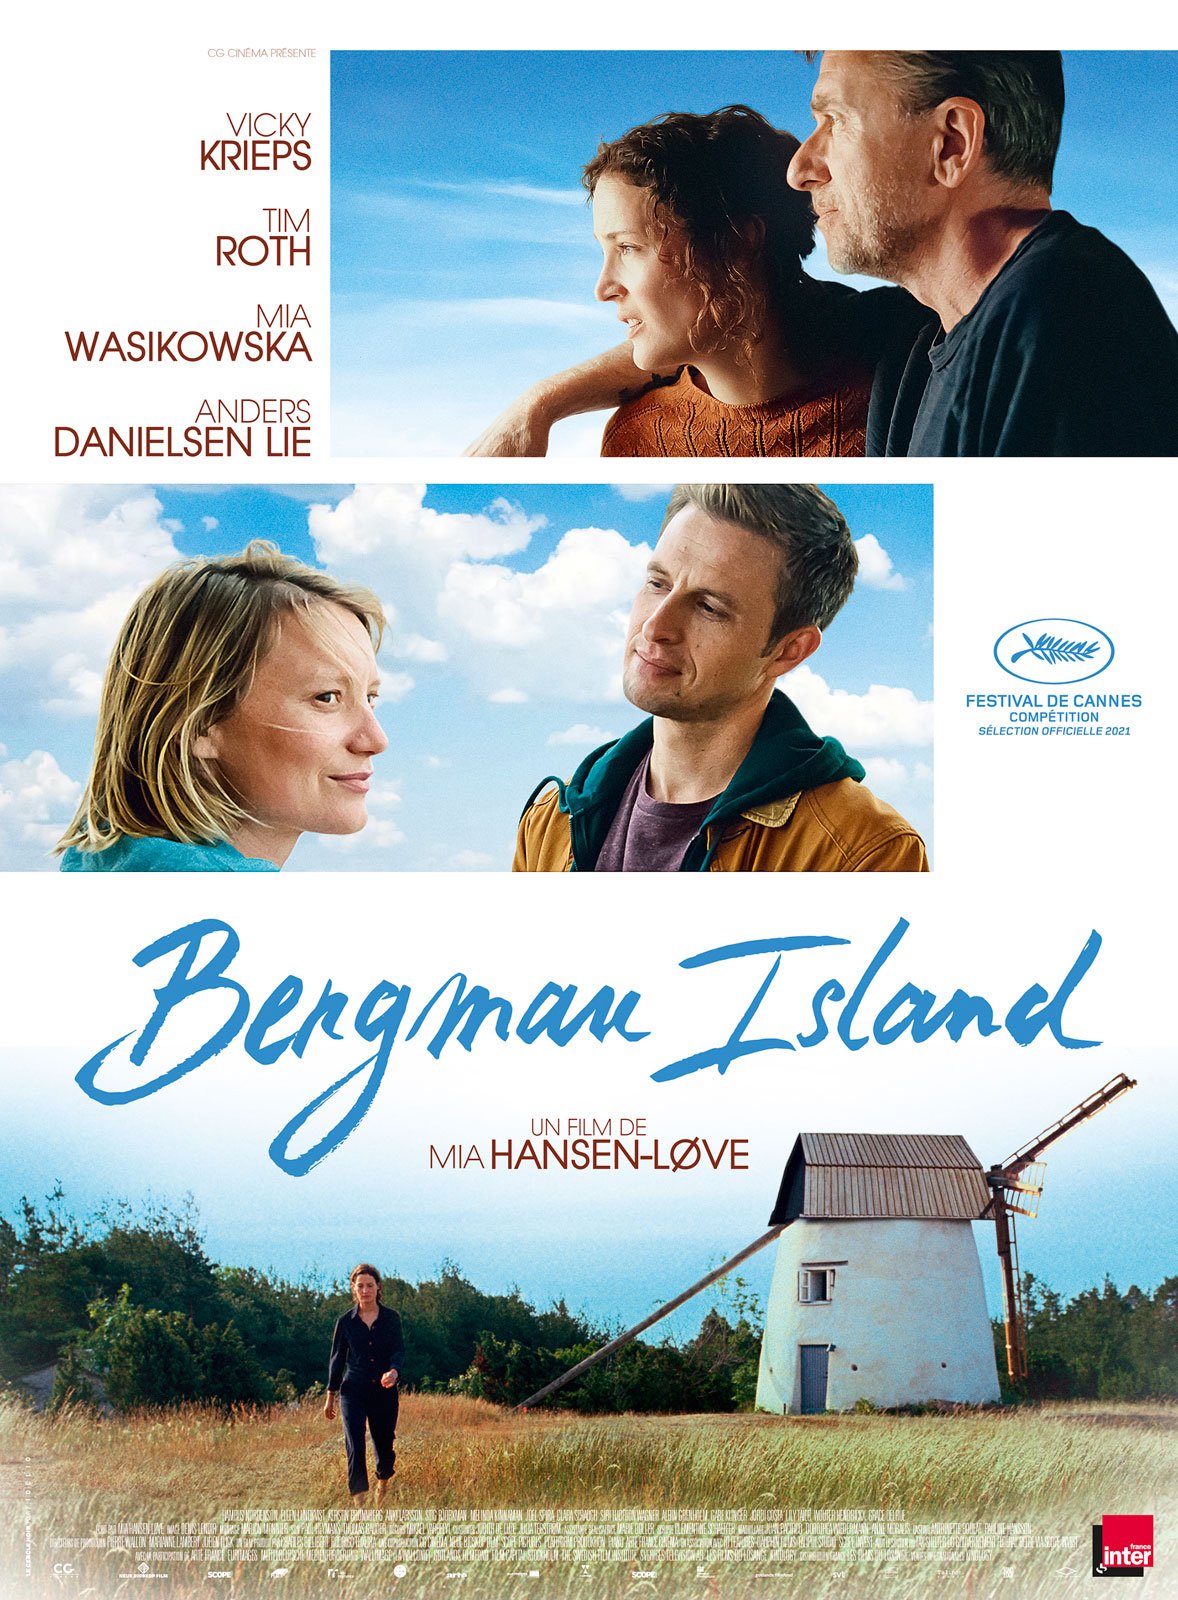 Bergman Island en DVD : Bergman Island DVD - AlloCiné